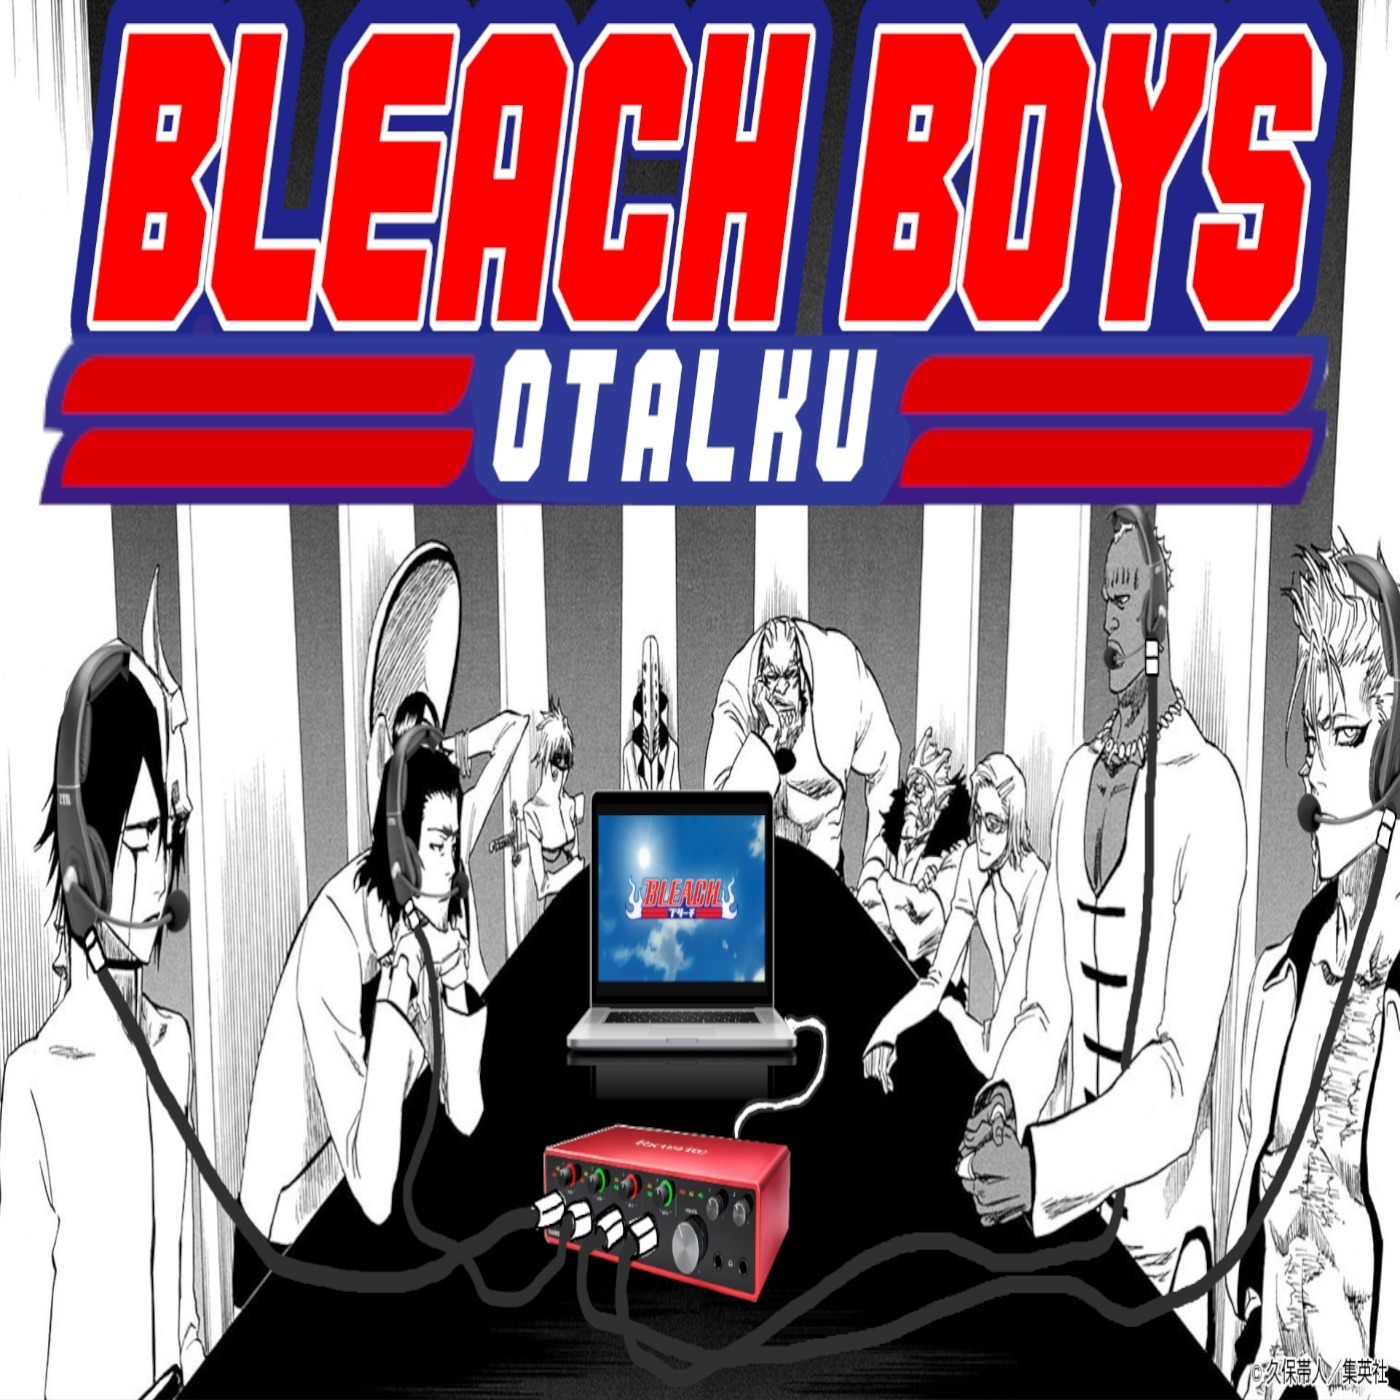 New Ichigo & Uryu forms for Bleach BBS 7th Anniversary what do you  think🔥🔥 : r/bleach